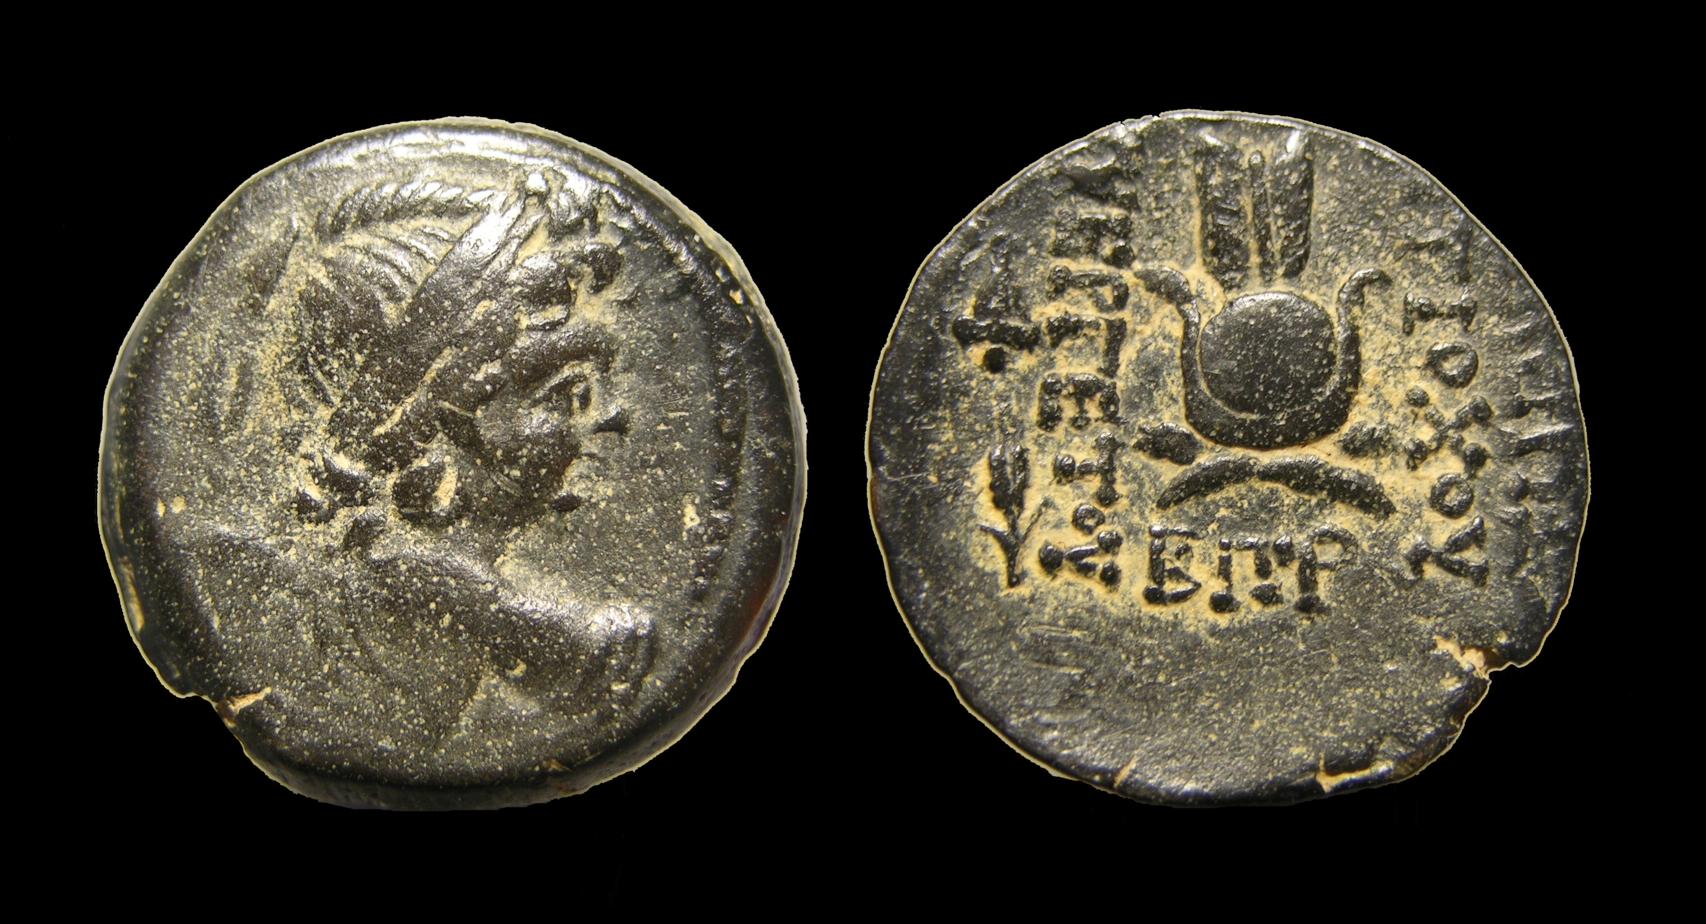 Antiochus VII